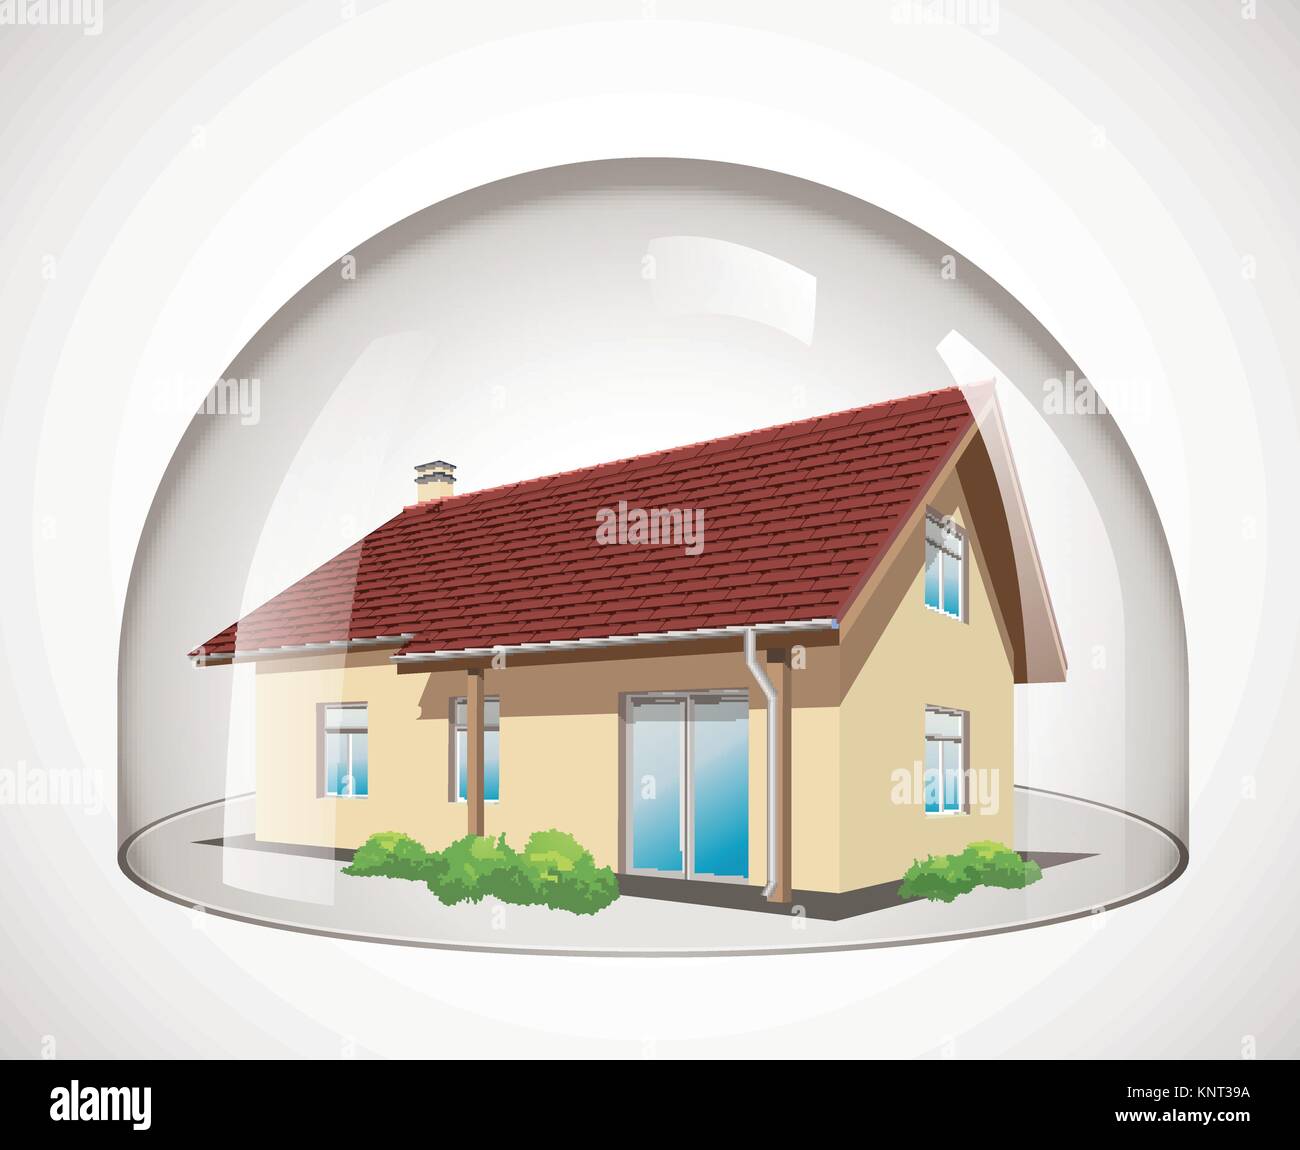 Dôme en verre - Maison protection concept - stock illustration Illustration de Vecteur